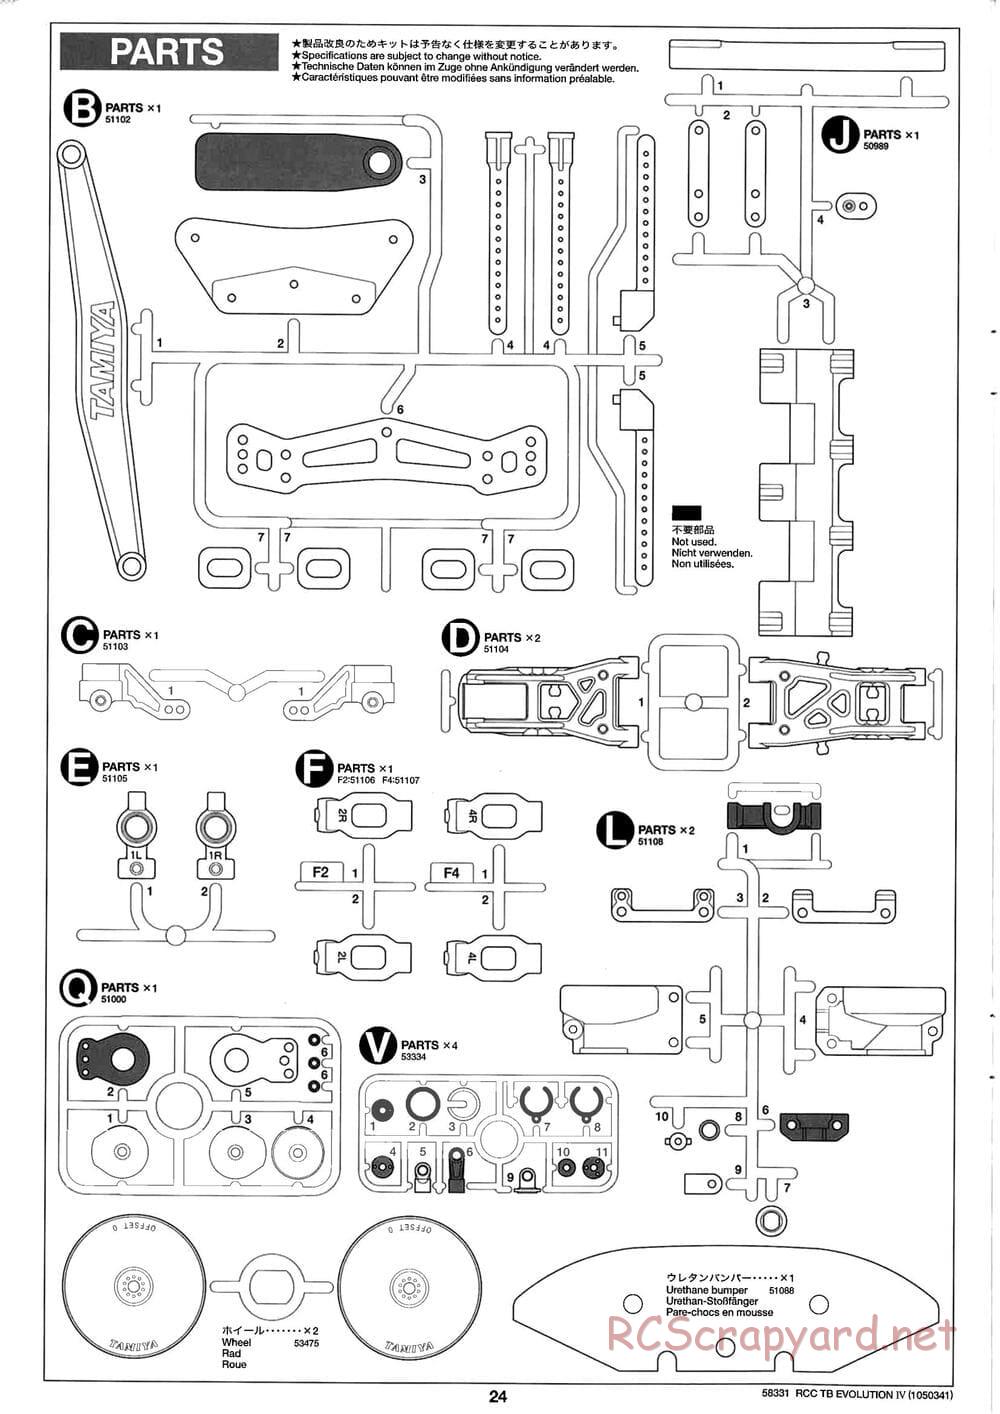 Tamiya - TB Evolution IV Chassis - Manual - Page 24